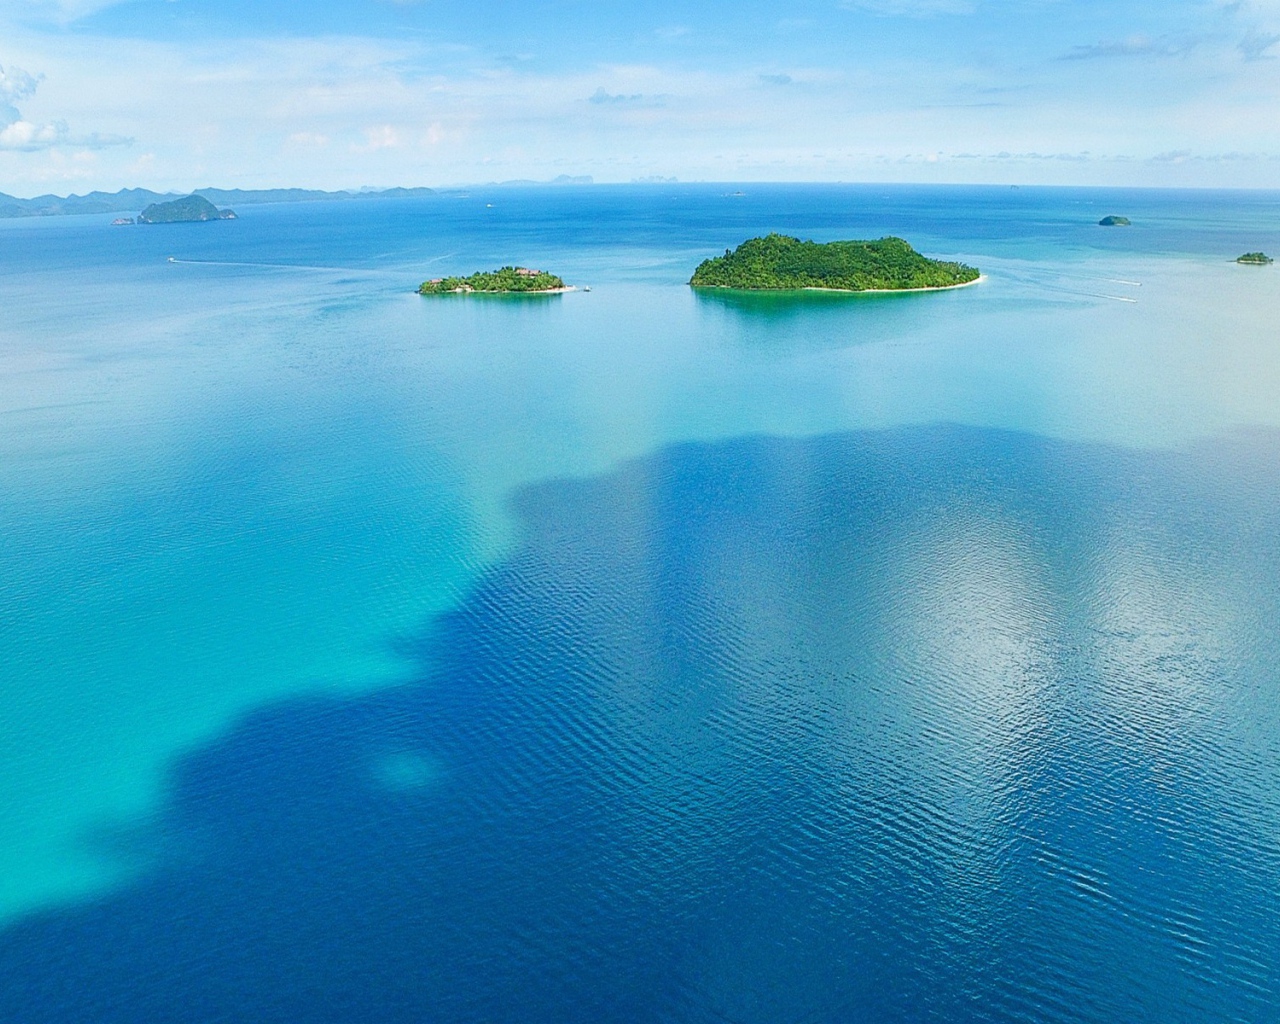 Зеленые острова в голубом море, Таиланд